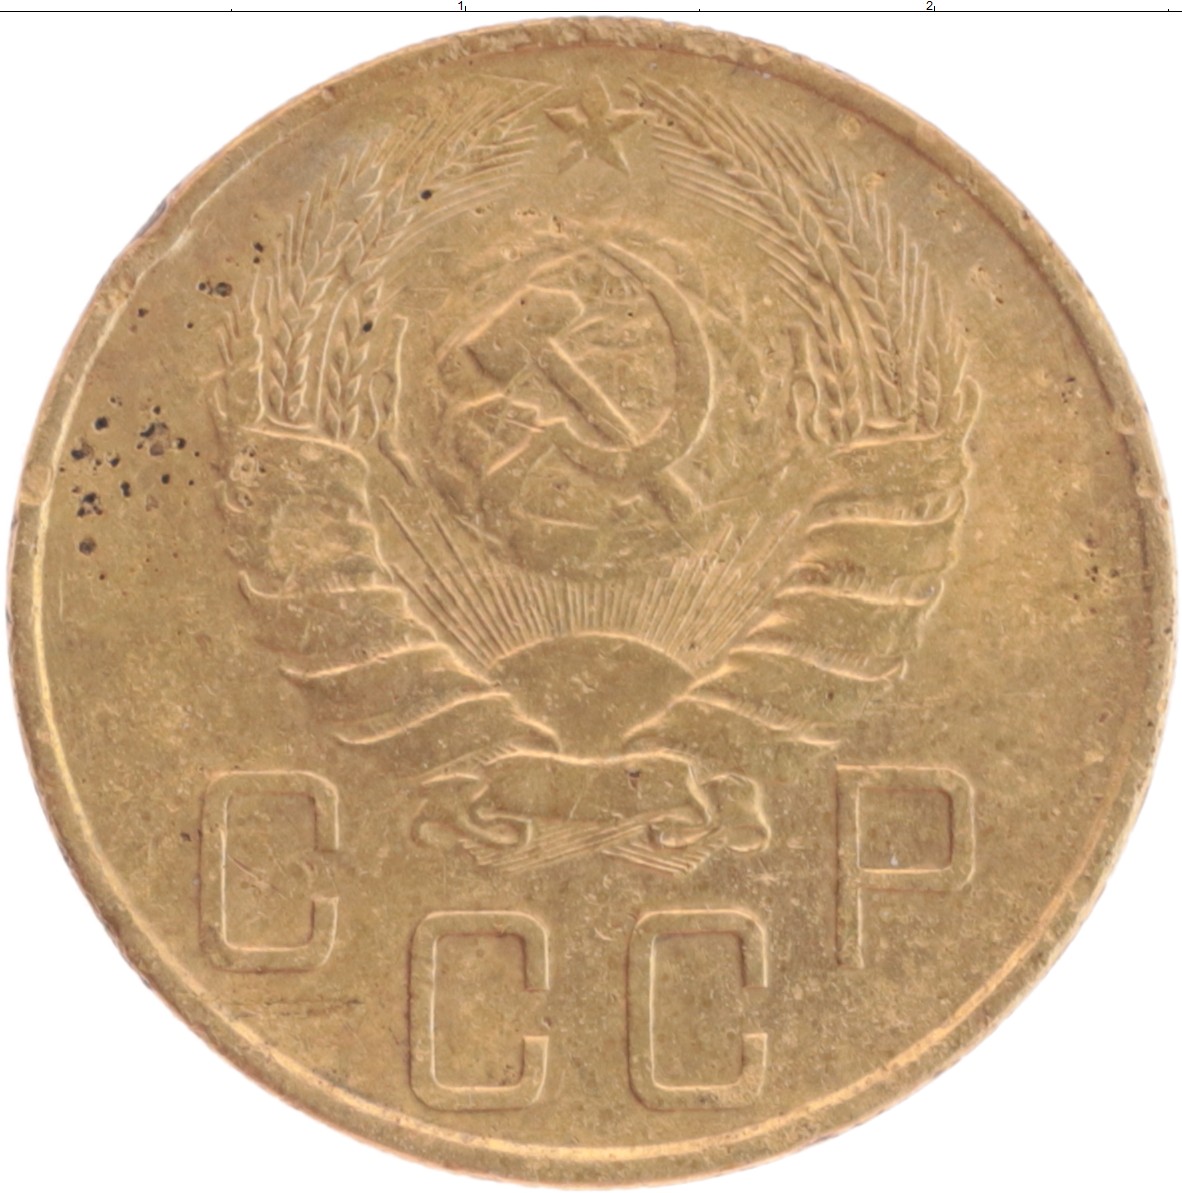 5 рублей медные. 5 Копеек 1949 года f. 5 Копеек 1949 года f №5. Диафото 1938 года цена. Сколько стоят монеты СССР 10 копеек 1949 года цена.